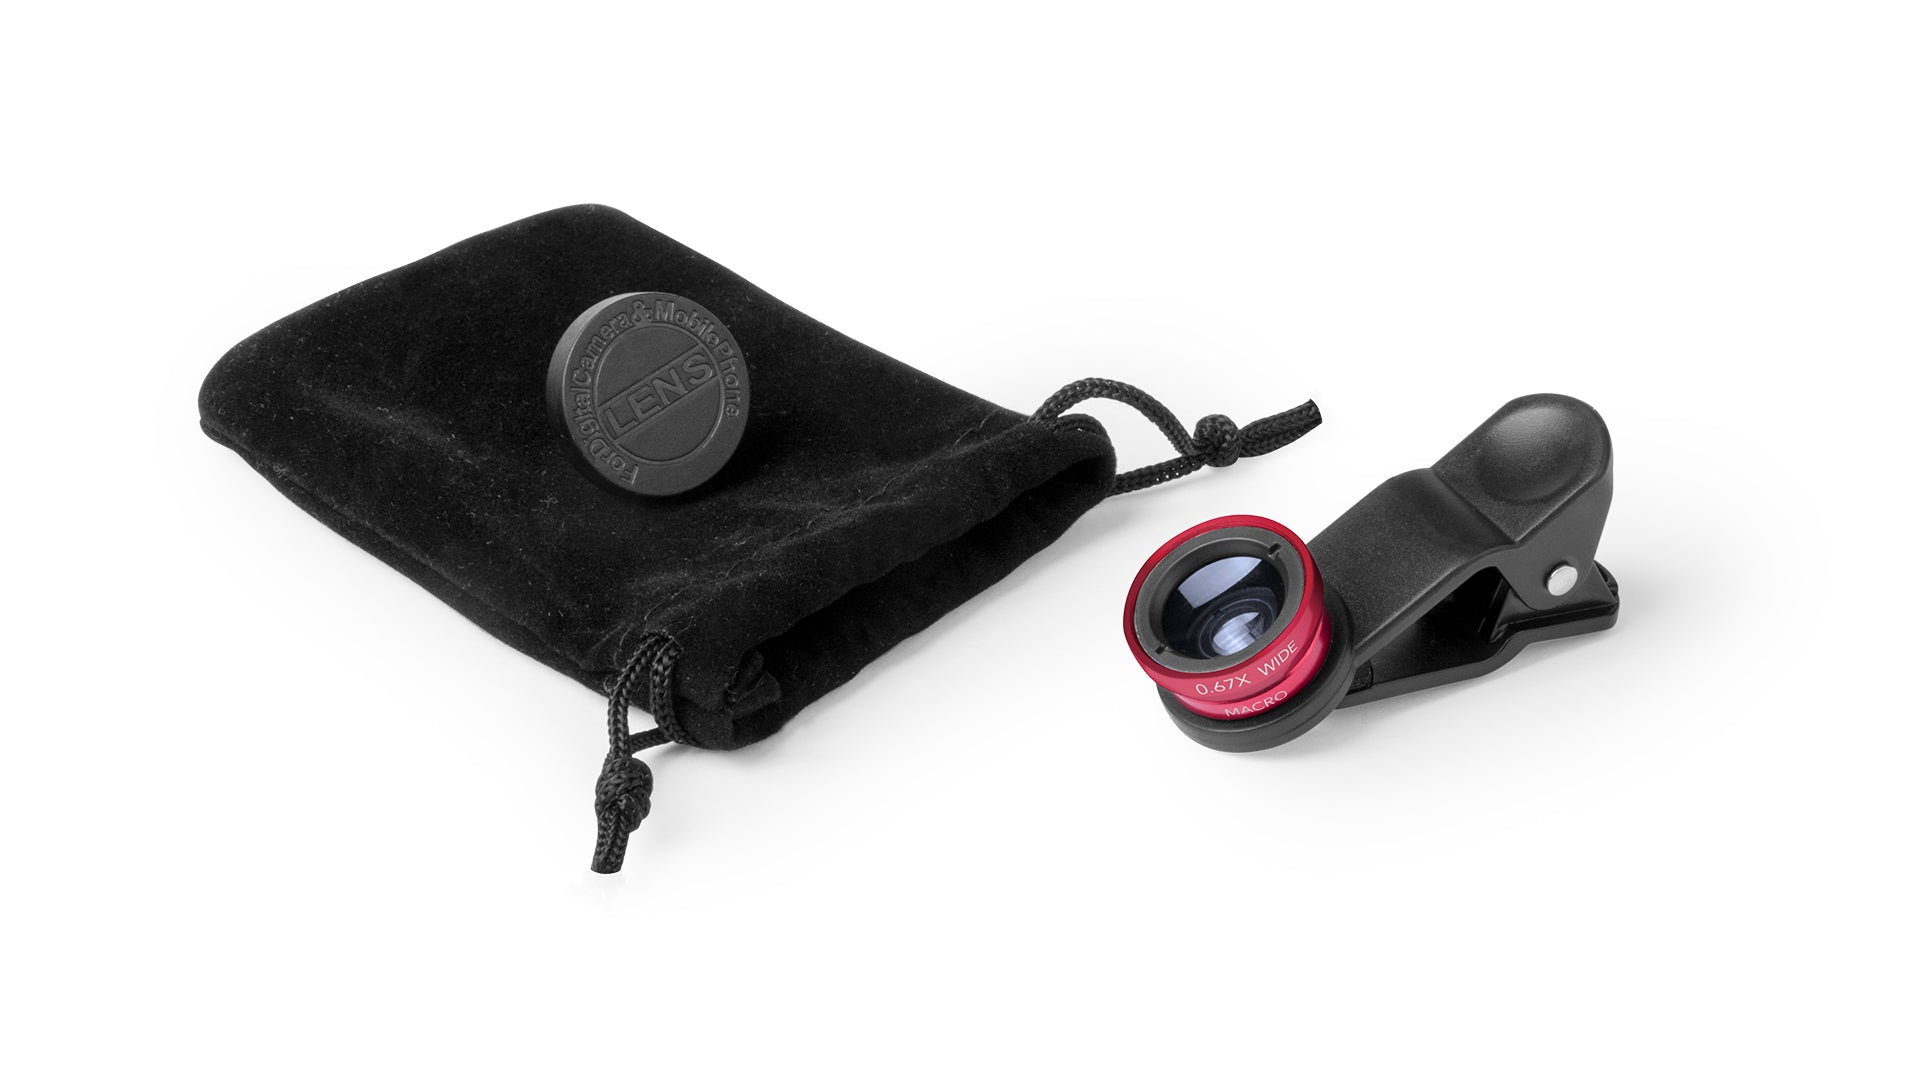 Lentilles universelles pour smartphone ajustables par pince DRIAN kit et accessoires